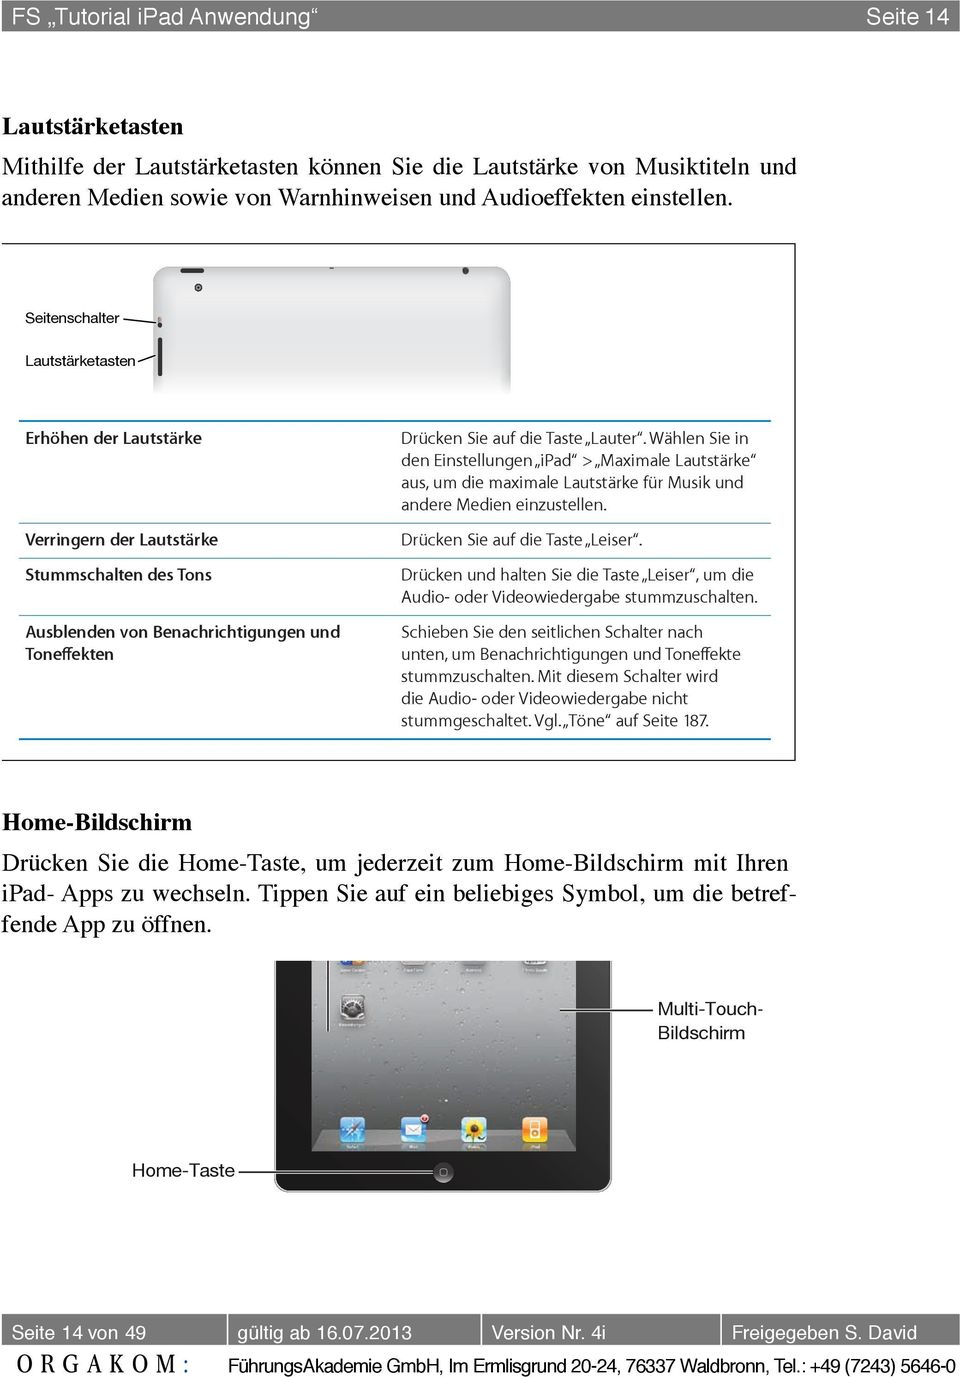 FS Tutorial ipad Anwendung Seite 14 Sie können das (separat erhältliche) ipad- Smart Cover verwenden, um den Ruhezustand des ipad 2 automatisch zu beenden, wenn Sie die Abdeckung anheben, und den